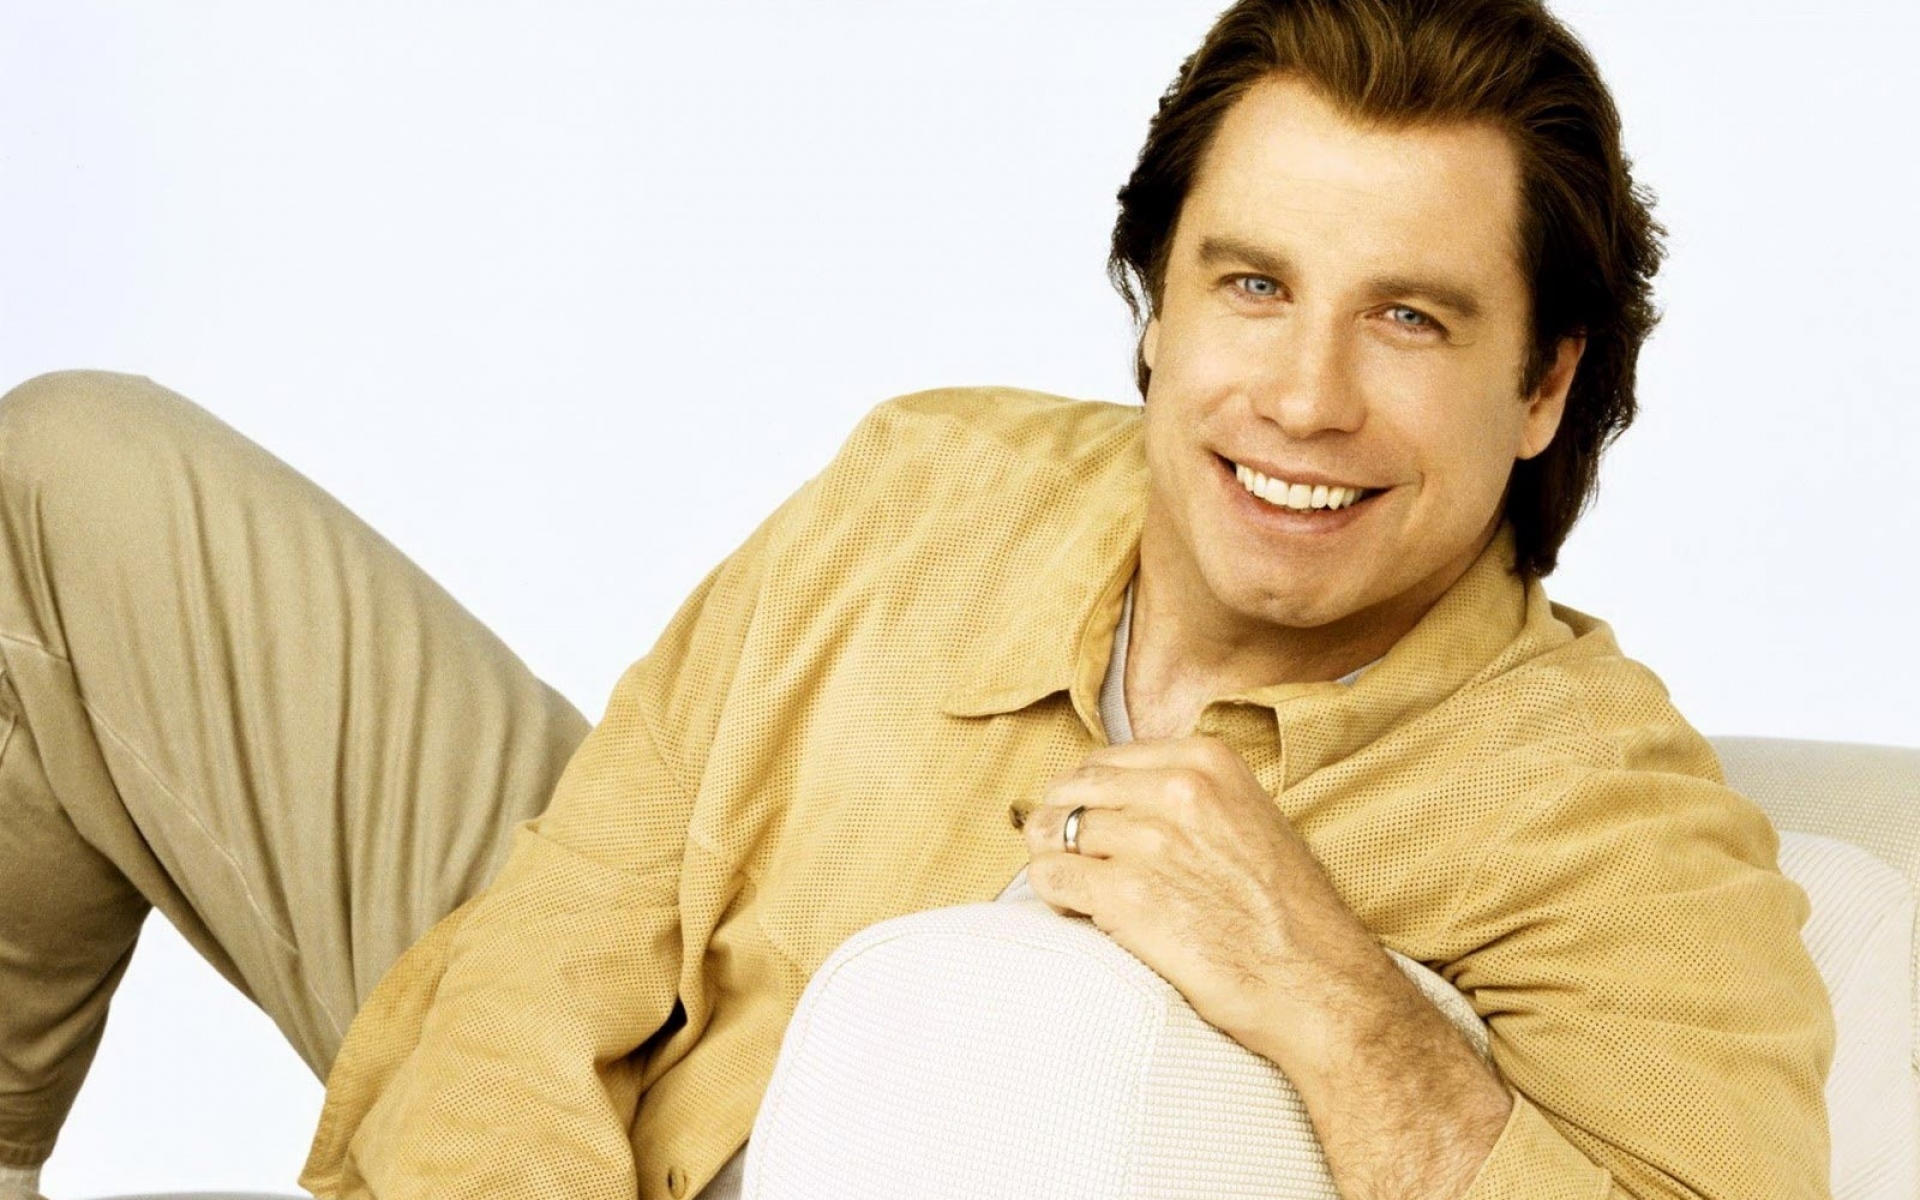 Картинки John travolta, знаменитость, брюнетка, кушетка, рубашка, улыбка фото и обои на рабочий стол